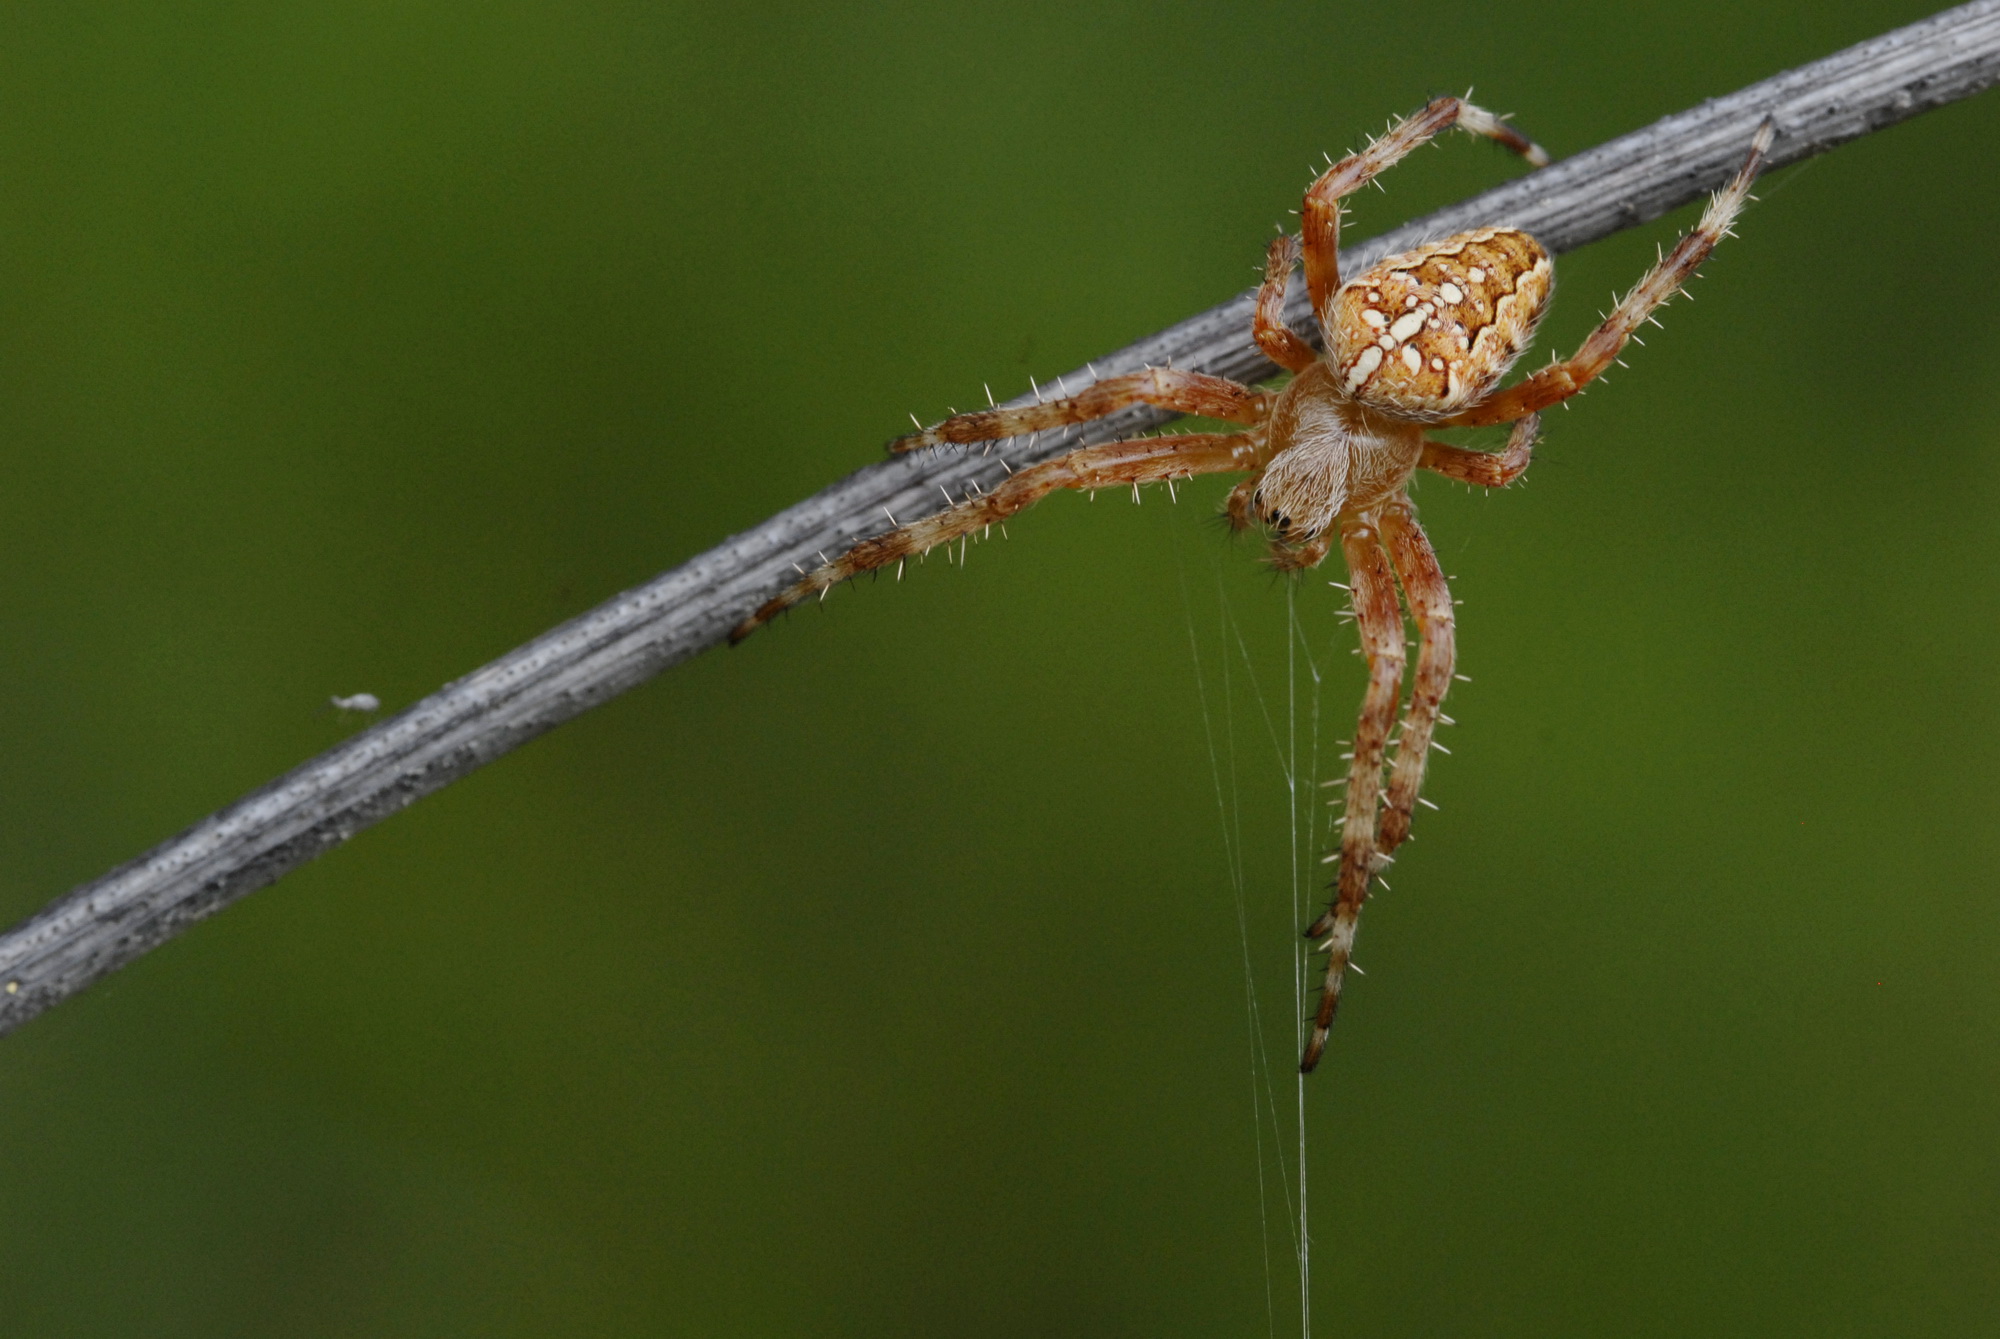 Garden spider sensing silk lines on web